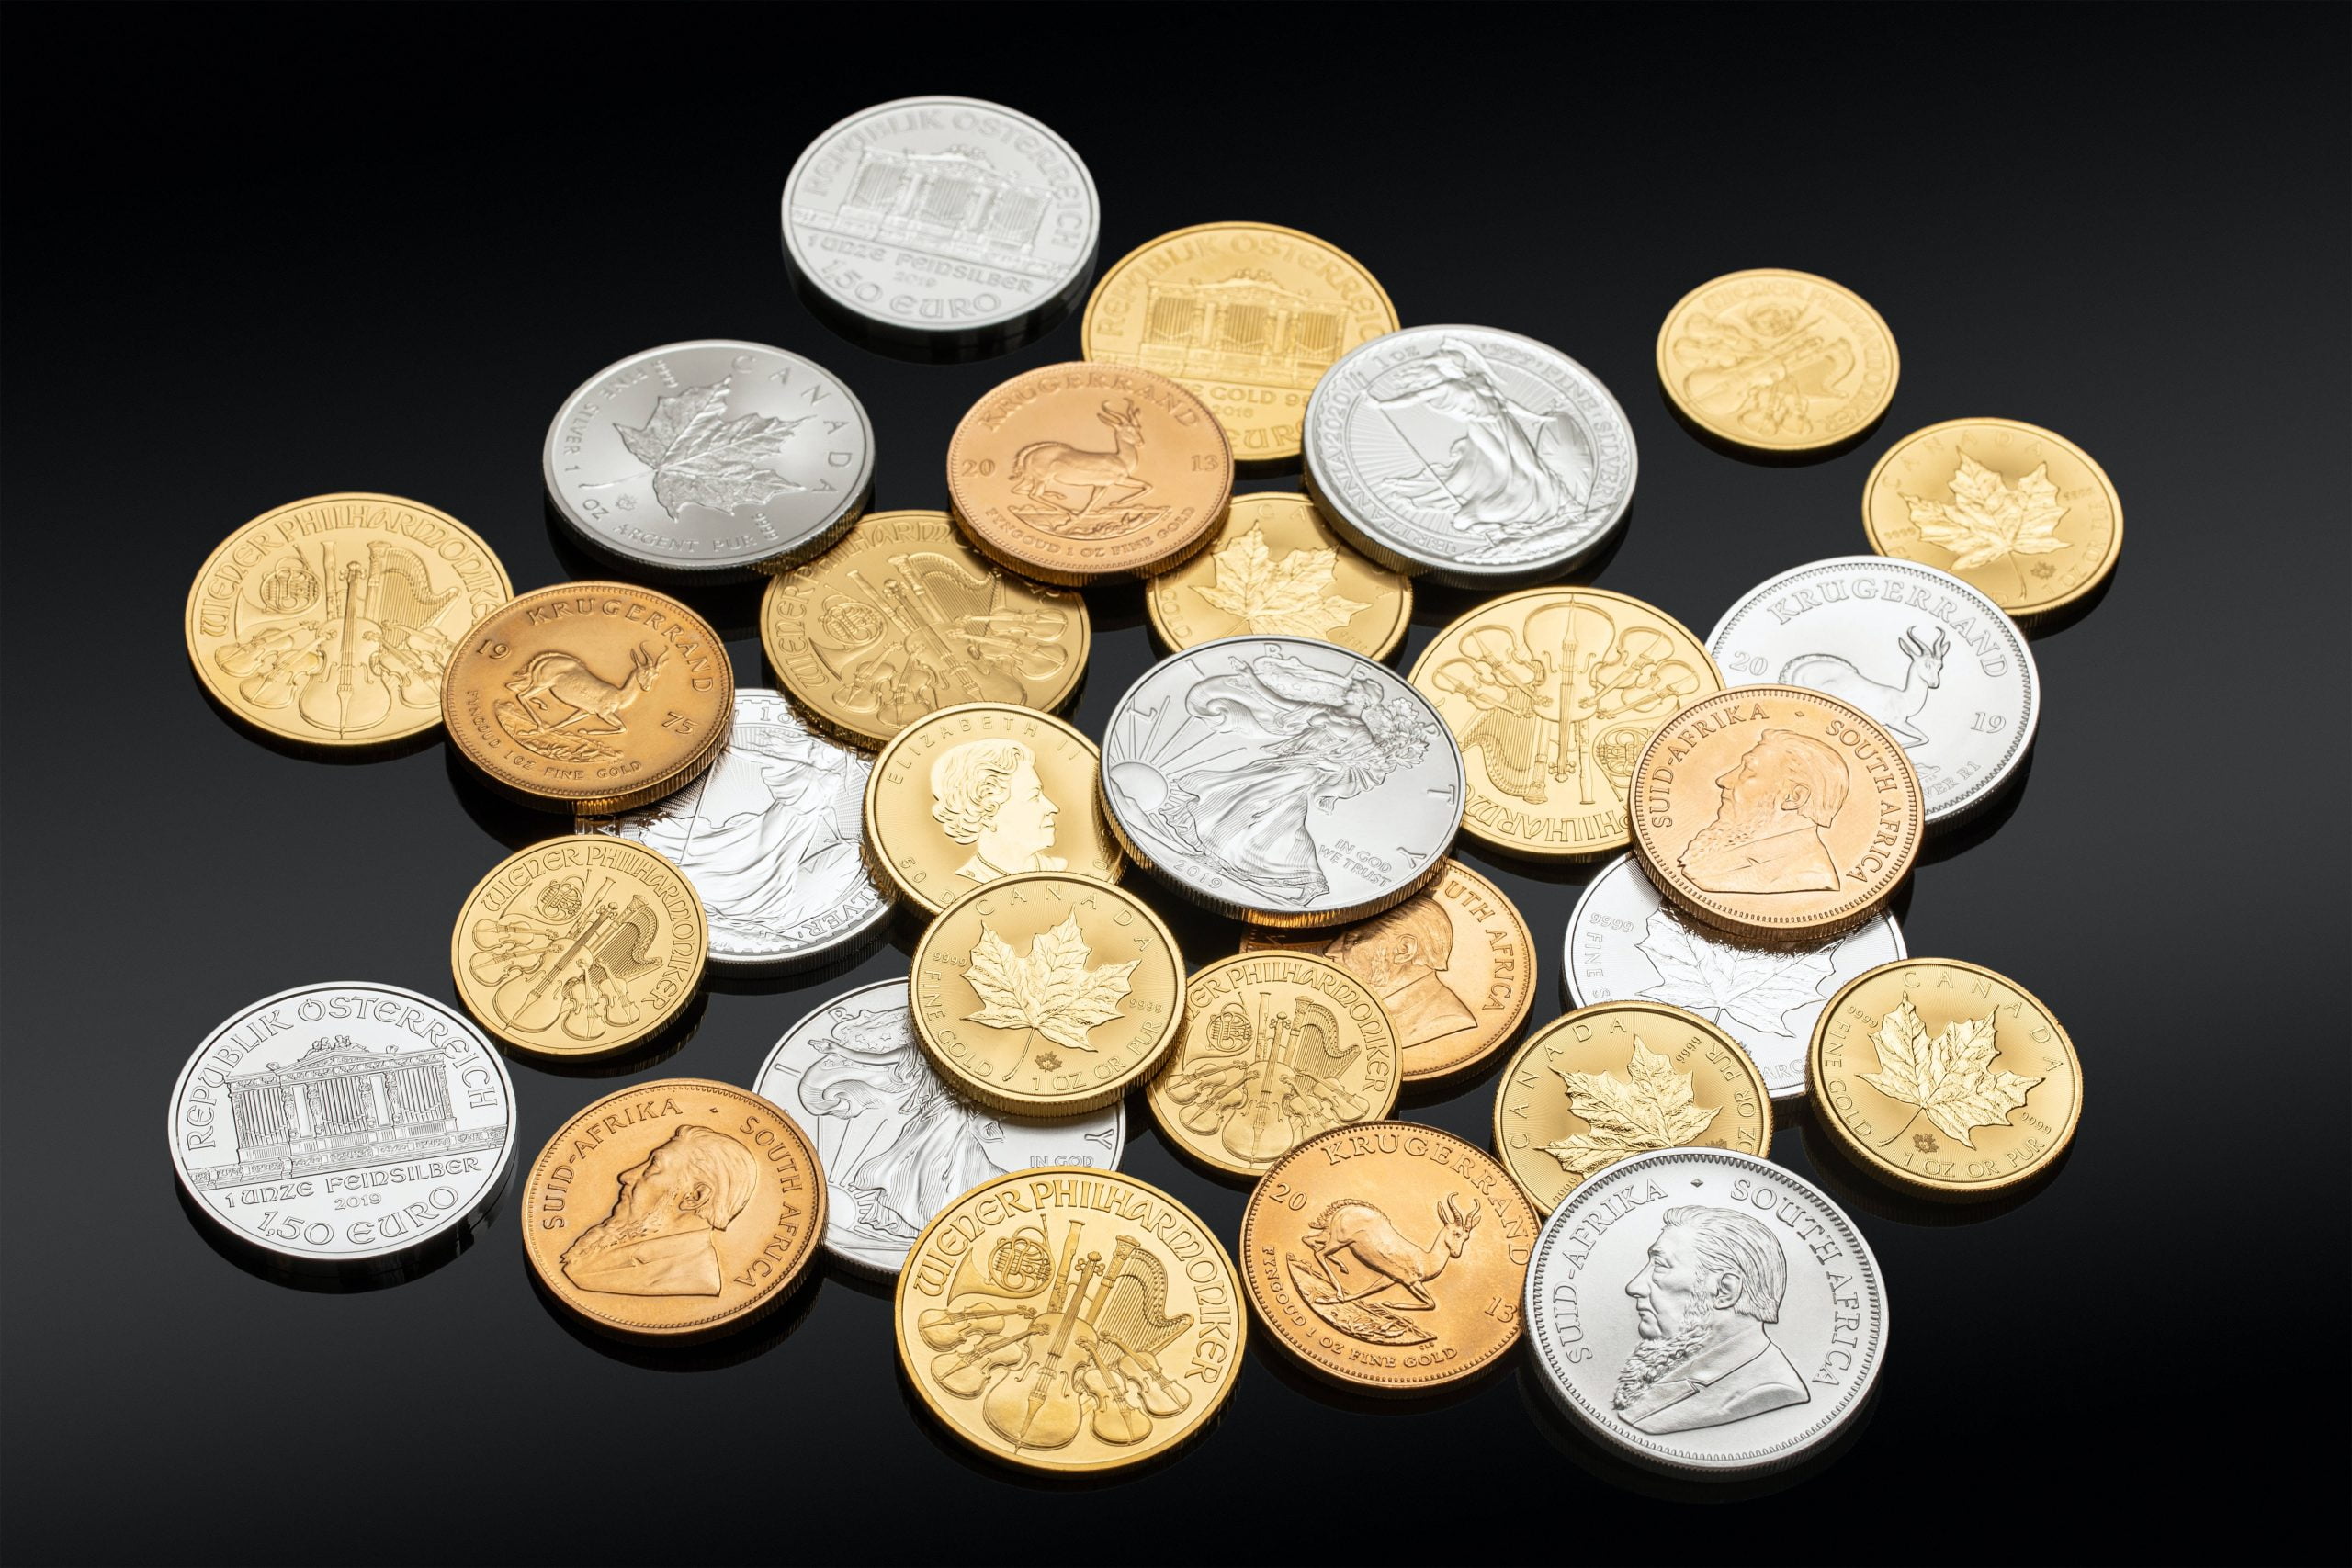 Χρυσά ή ασημένια νομίσματα; Επενδύστε κατάλληλα!